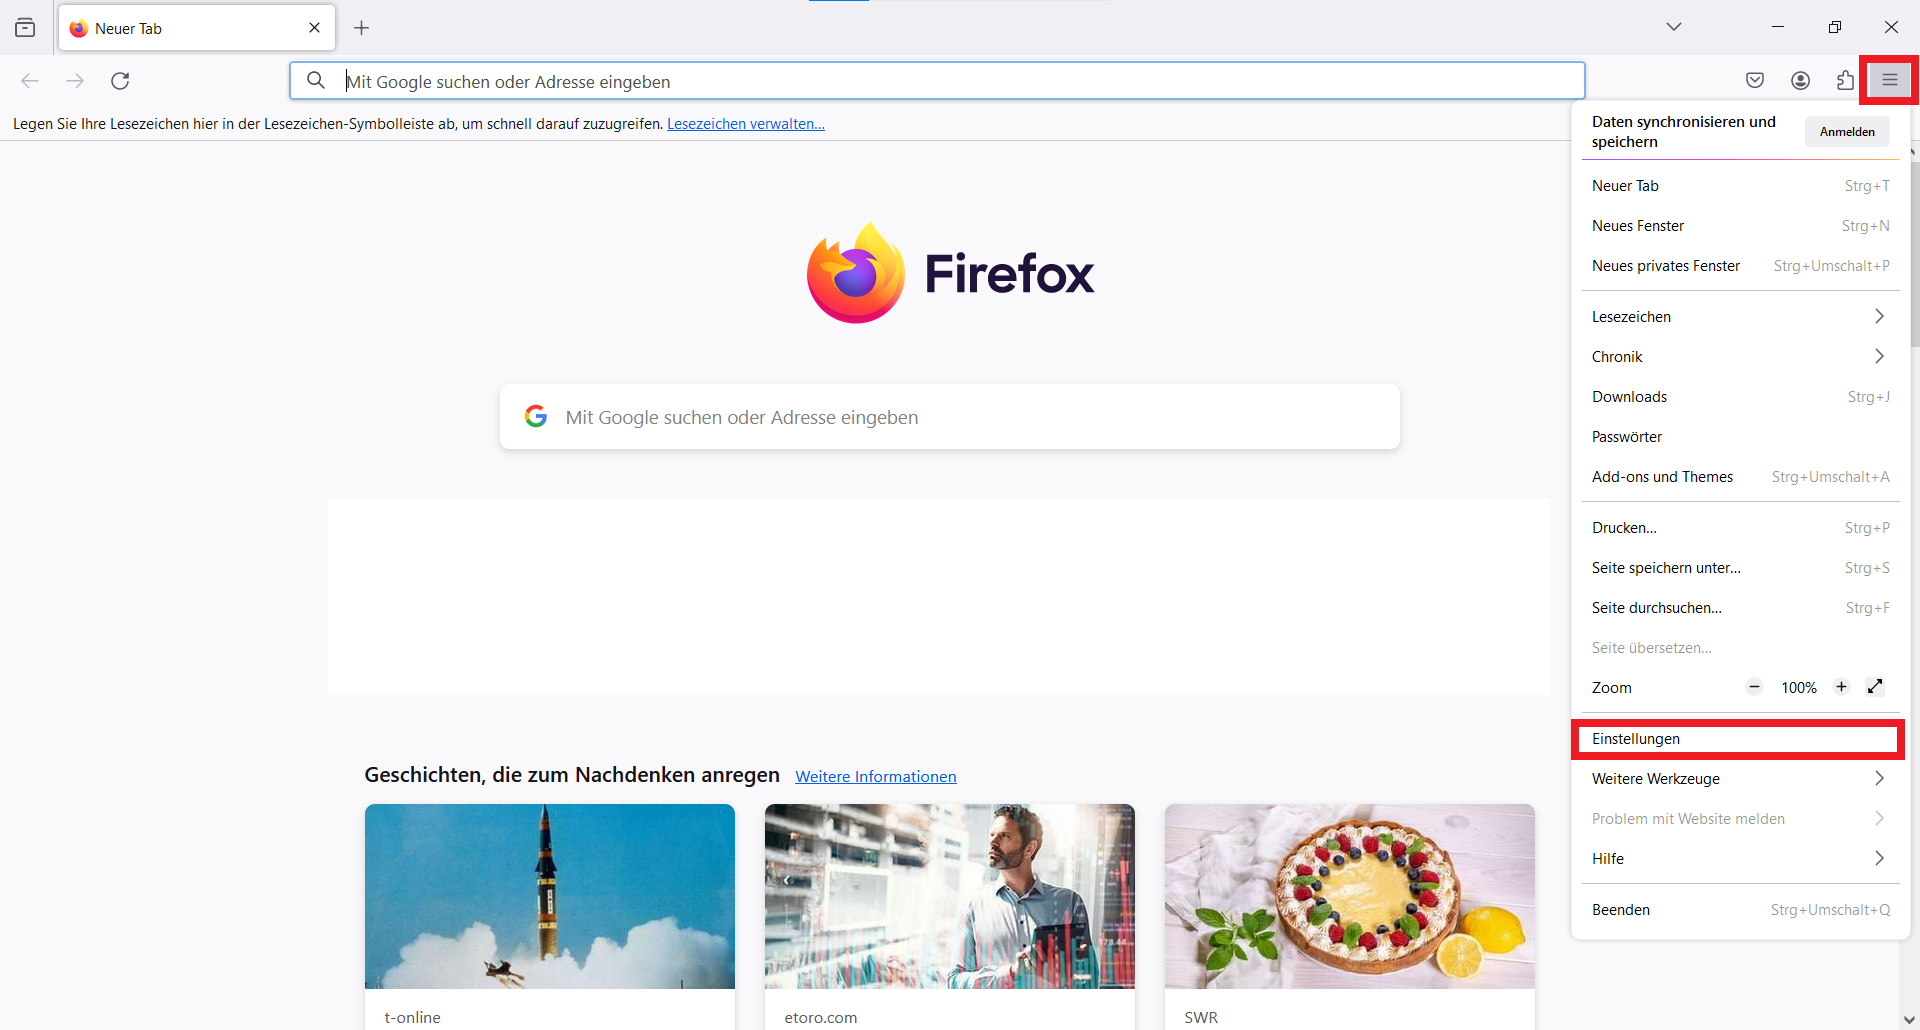 2. Open Firefox settings